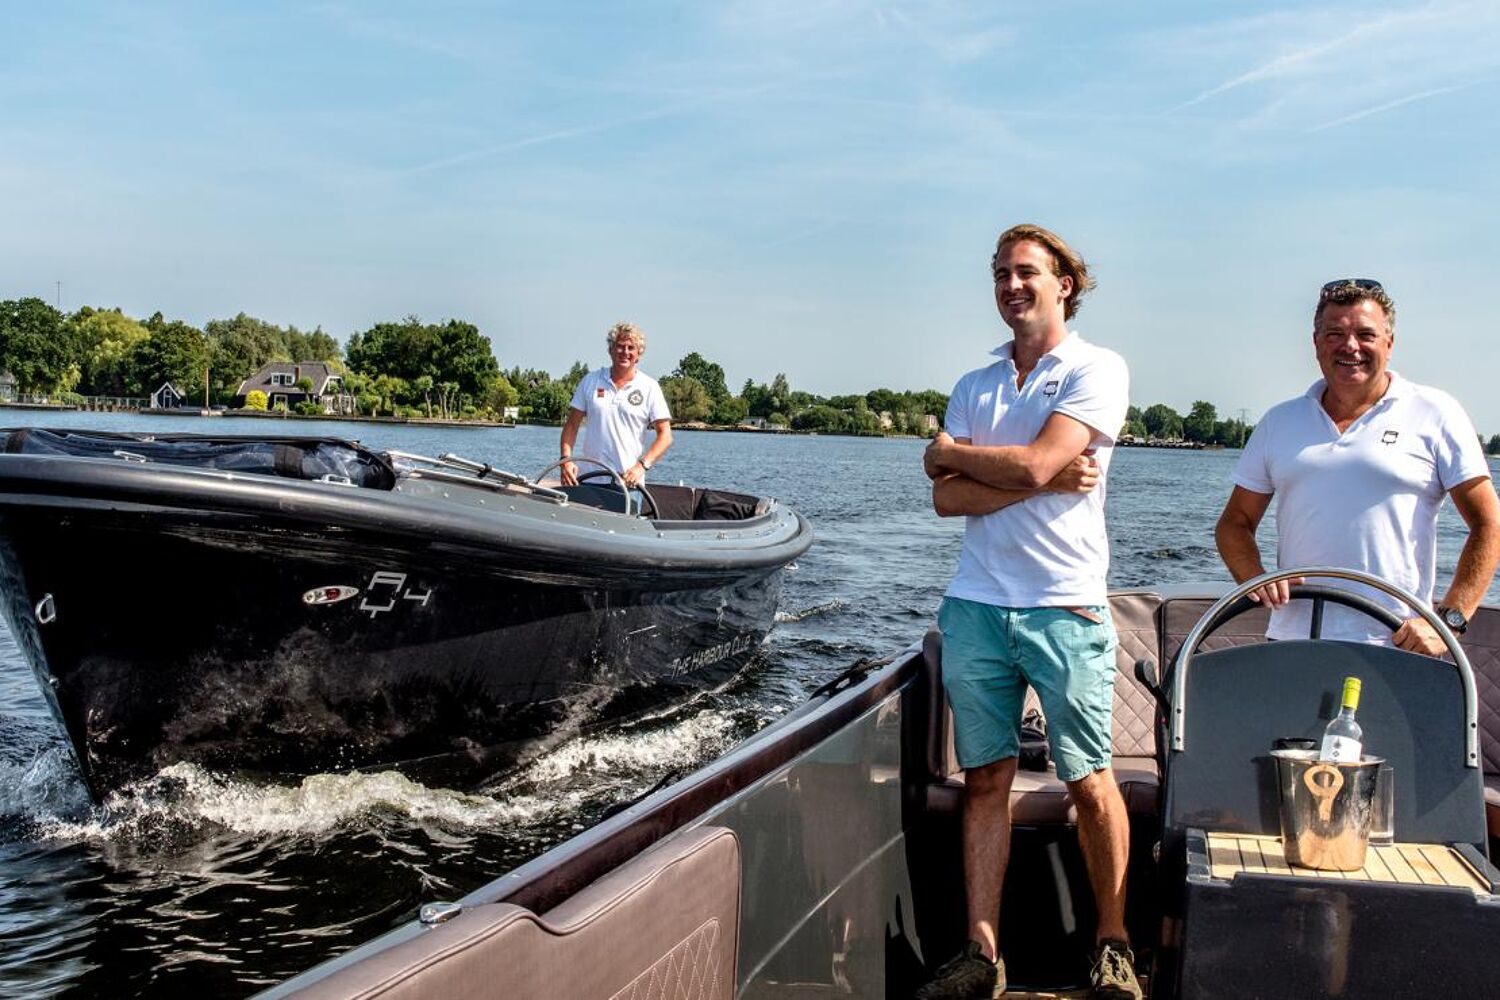 Ondernemers Coen van den Heuvel en Arnold Krechting beiden op een boot varend op het water.